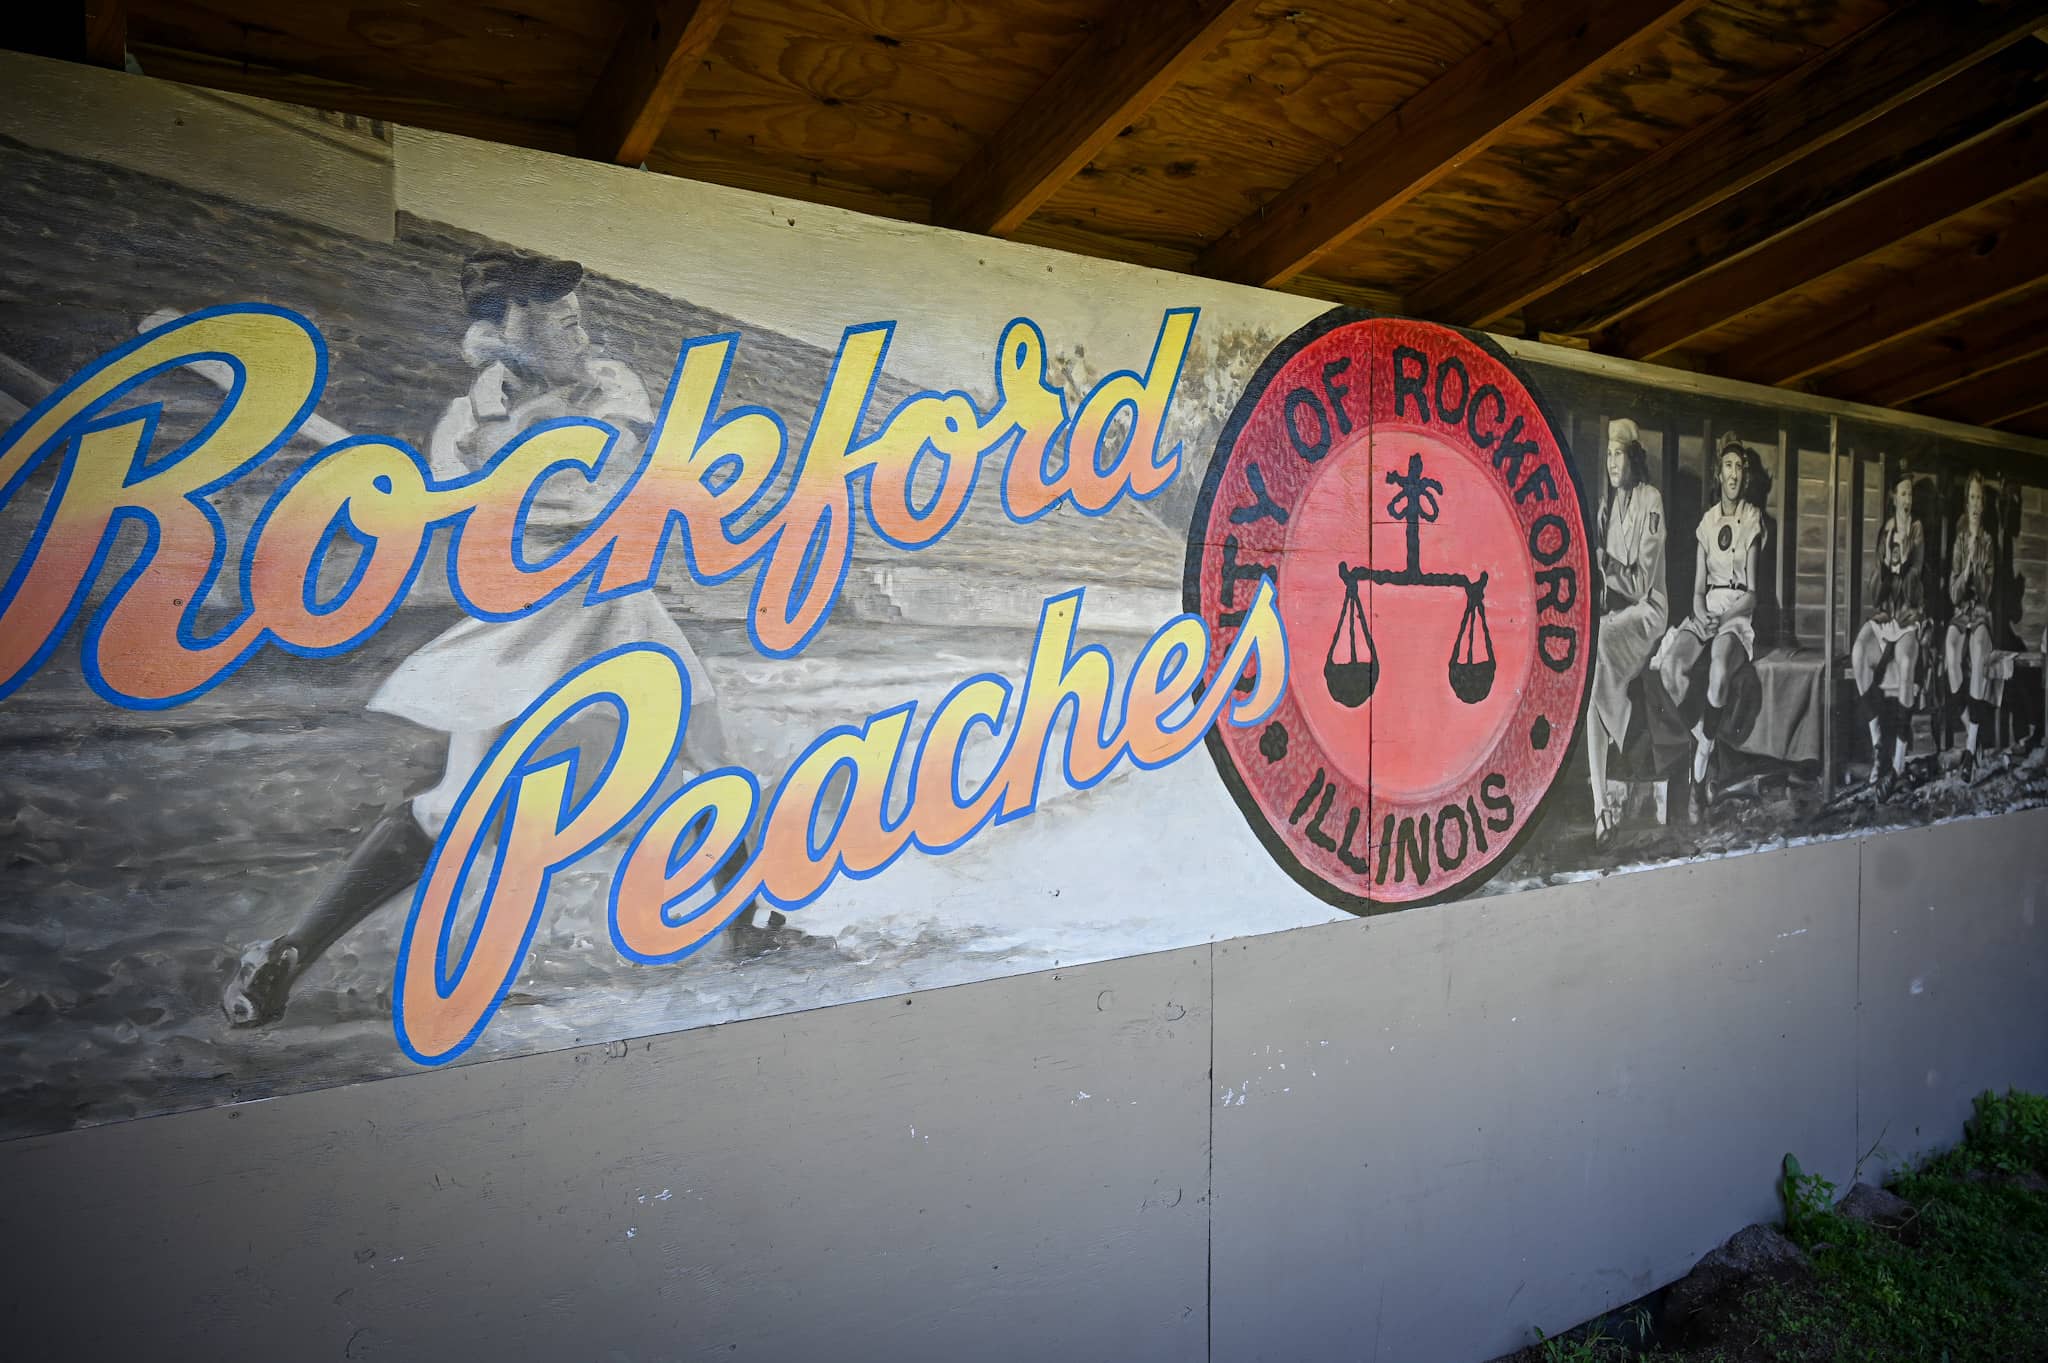 rockford peaches show